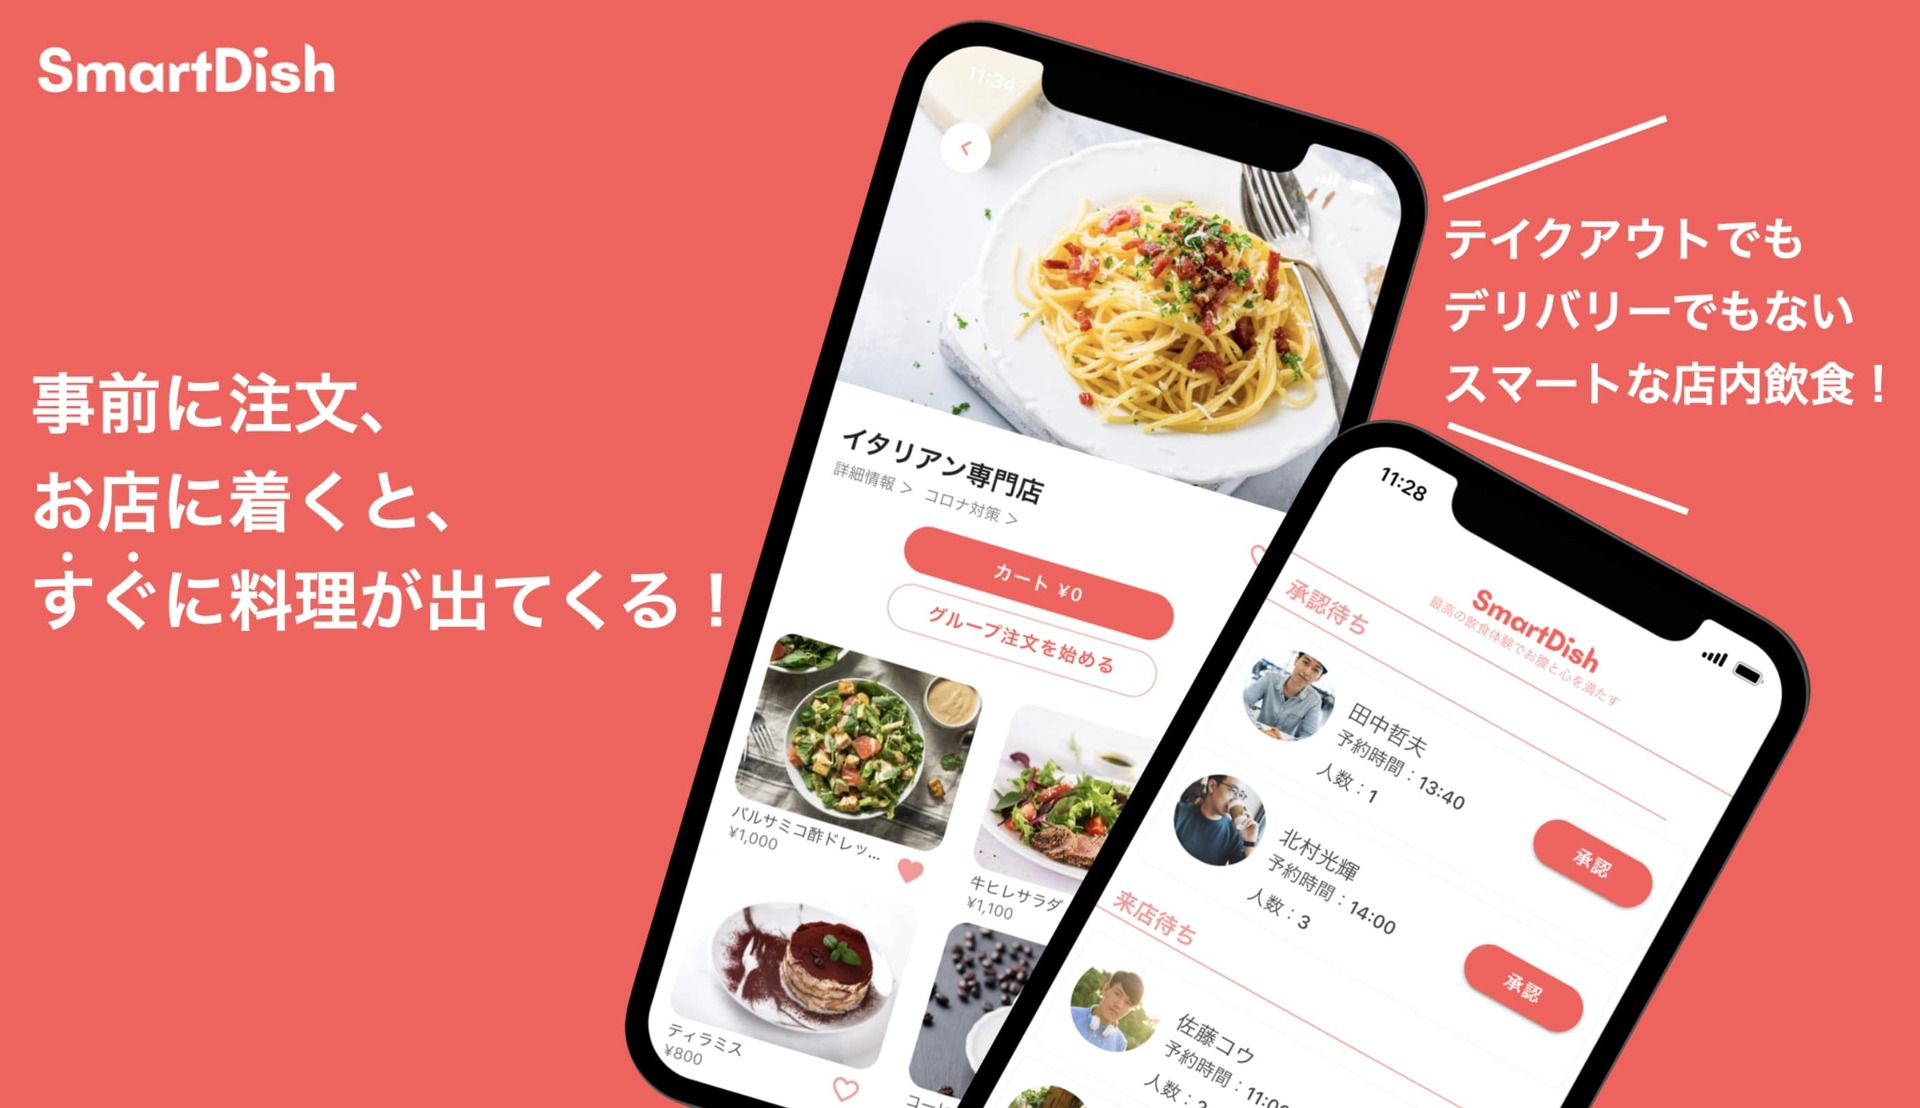 料理提供までの待ち時間をなくすアプリ「SmartDish」リリース　渋谷エリアで提供開始